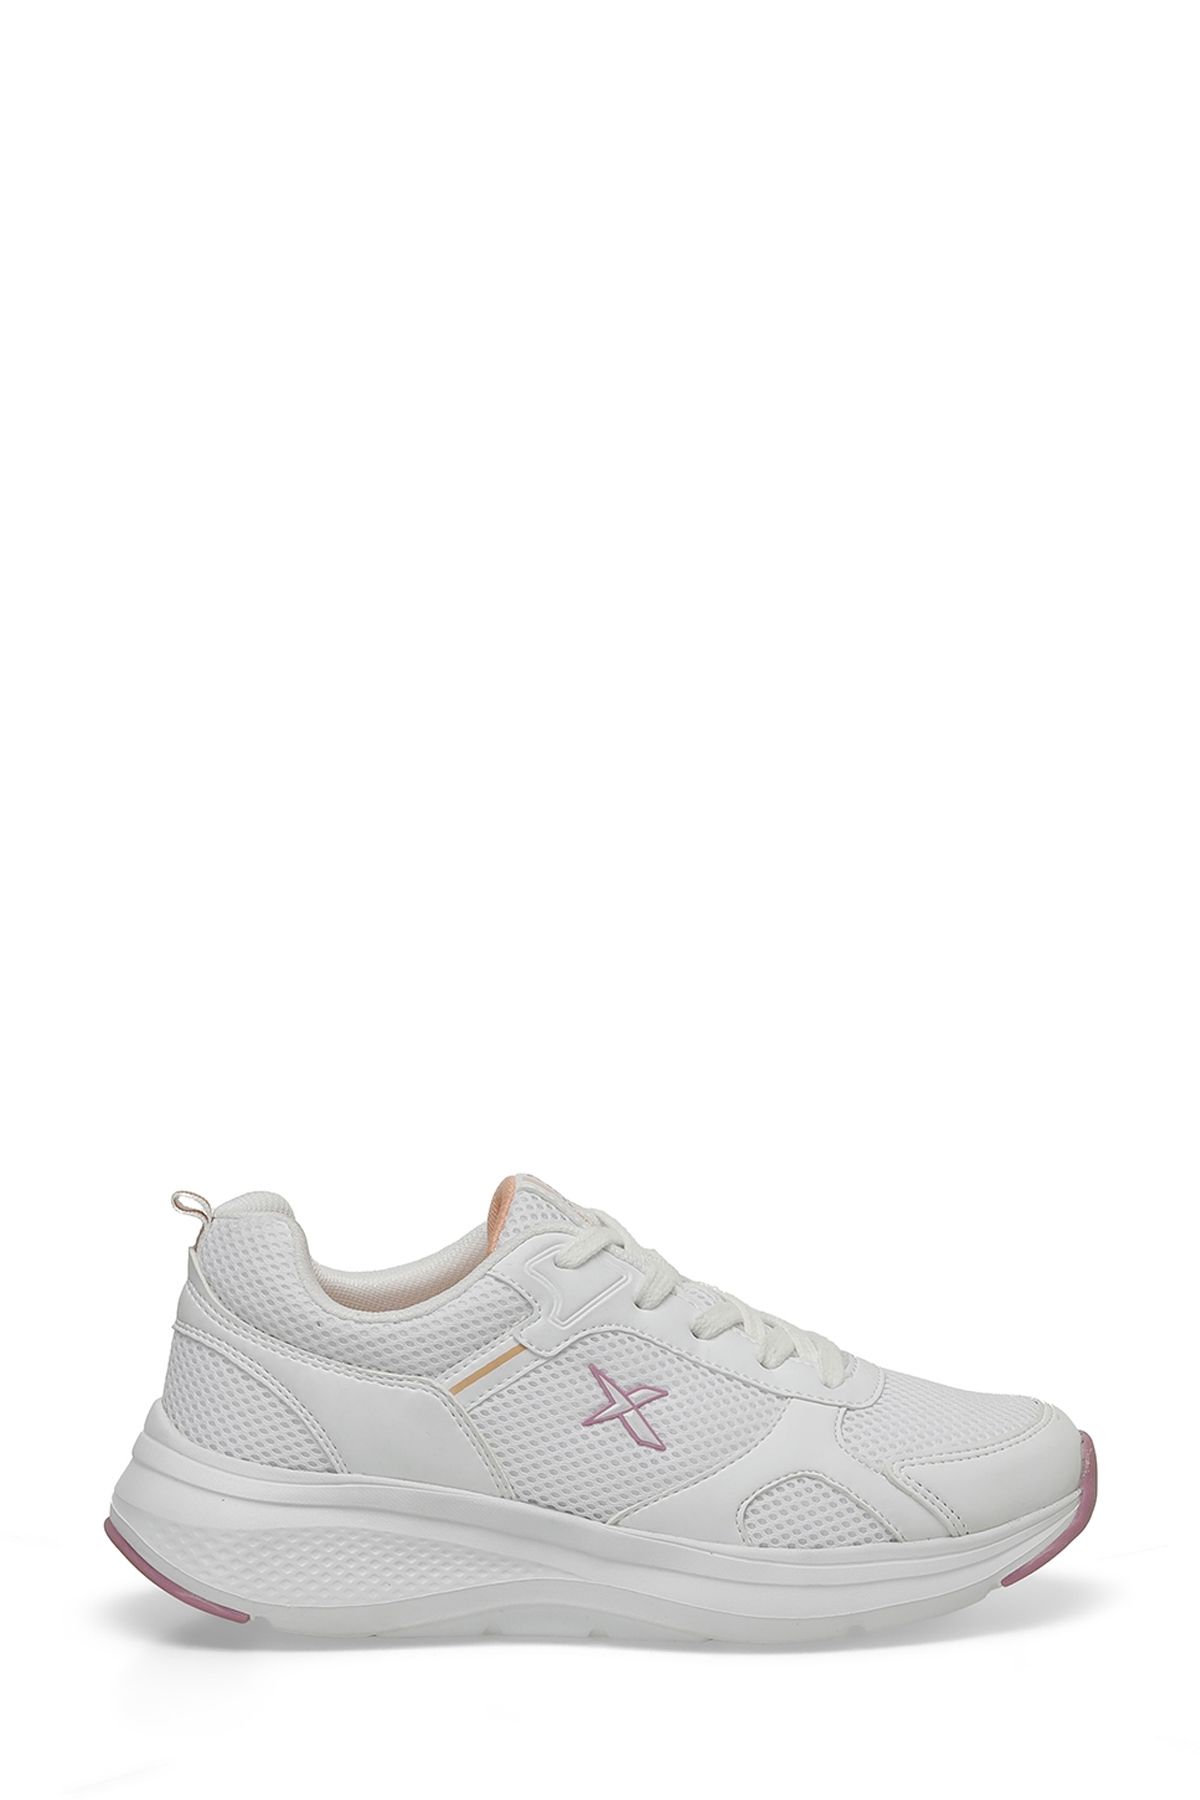 Kinetix A10149041612010 4m Cıntıa Tx W 4fx Beyaz Kadın Sneaker Ayakkabı